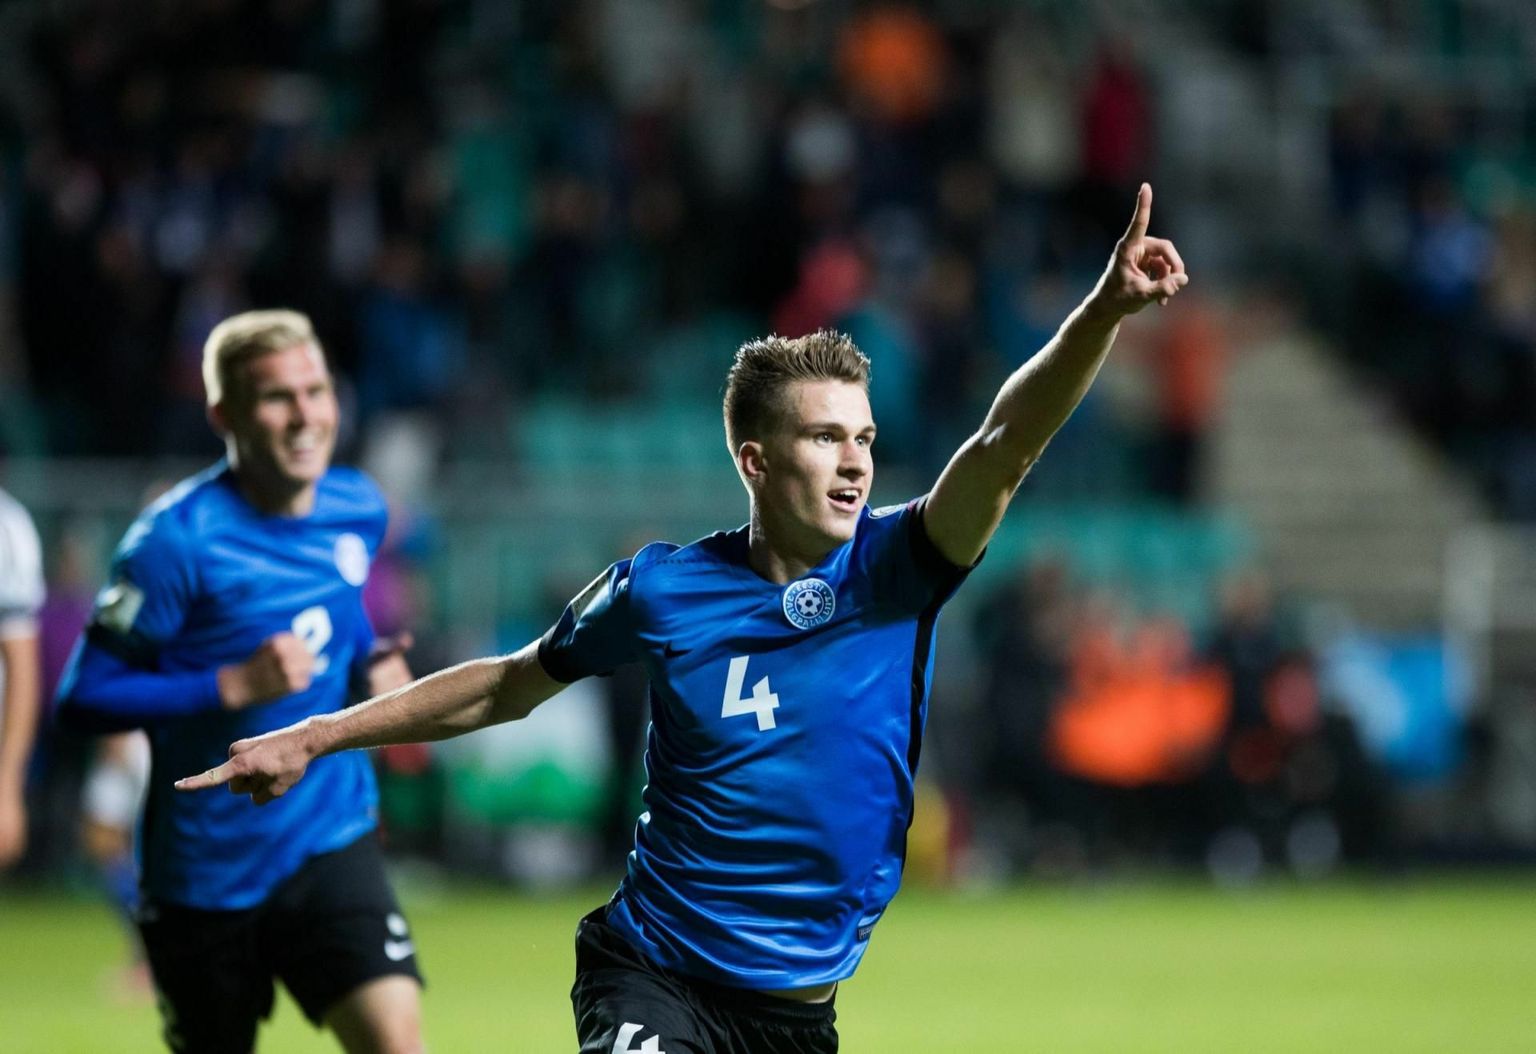 Rahvuste liigal on lõpuks ometi võimalik Eesti jalgpallile ka rõõmu pakkuda. Sel fotol tähistab väravat koondise poolkaitsja Mattias Käit.